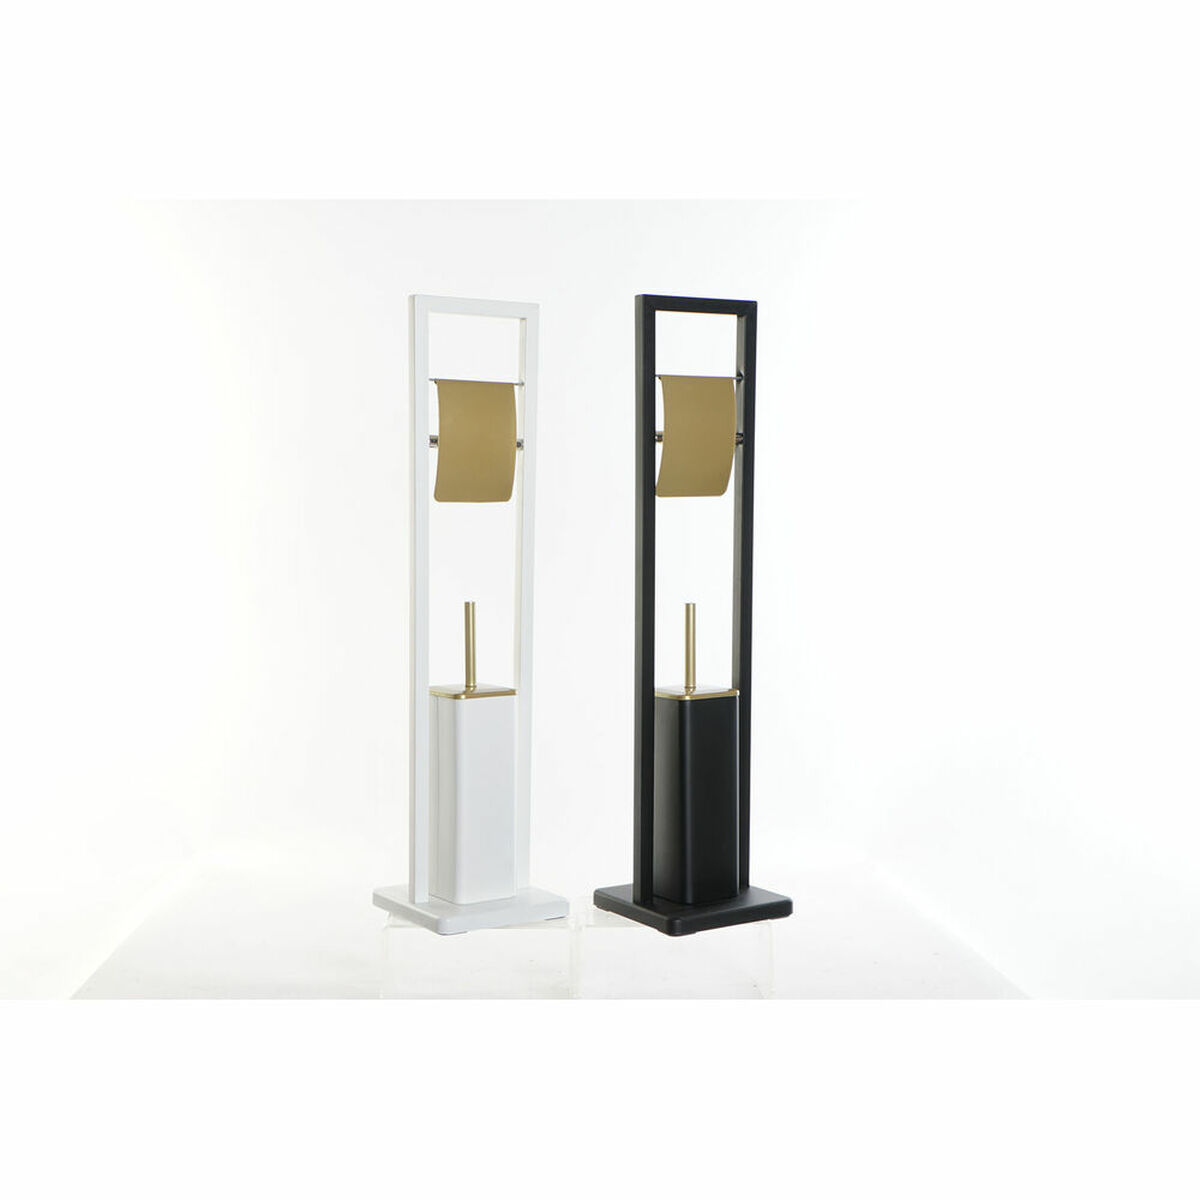 Porte-rouleaux pour Papier Toilette DKD Home Decor Noir Doré Acier inoxydable Blanc 20 x 20 x 80 cm (2 Unités)